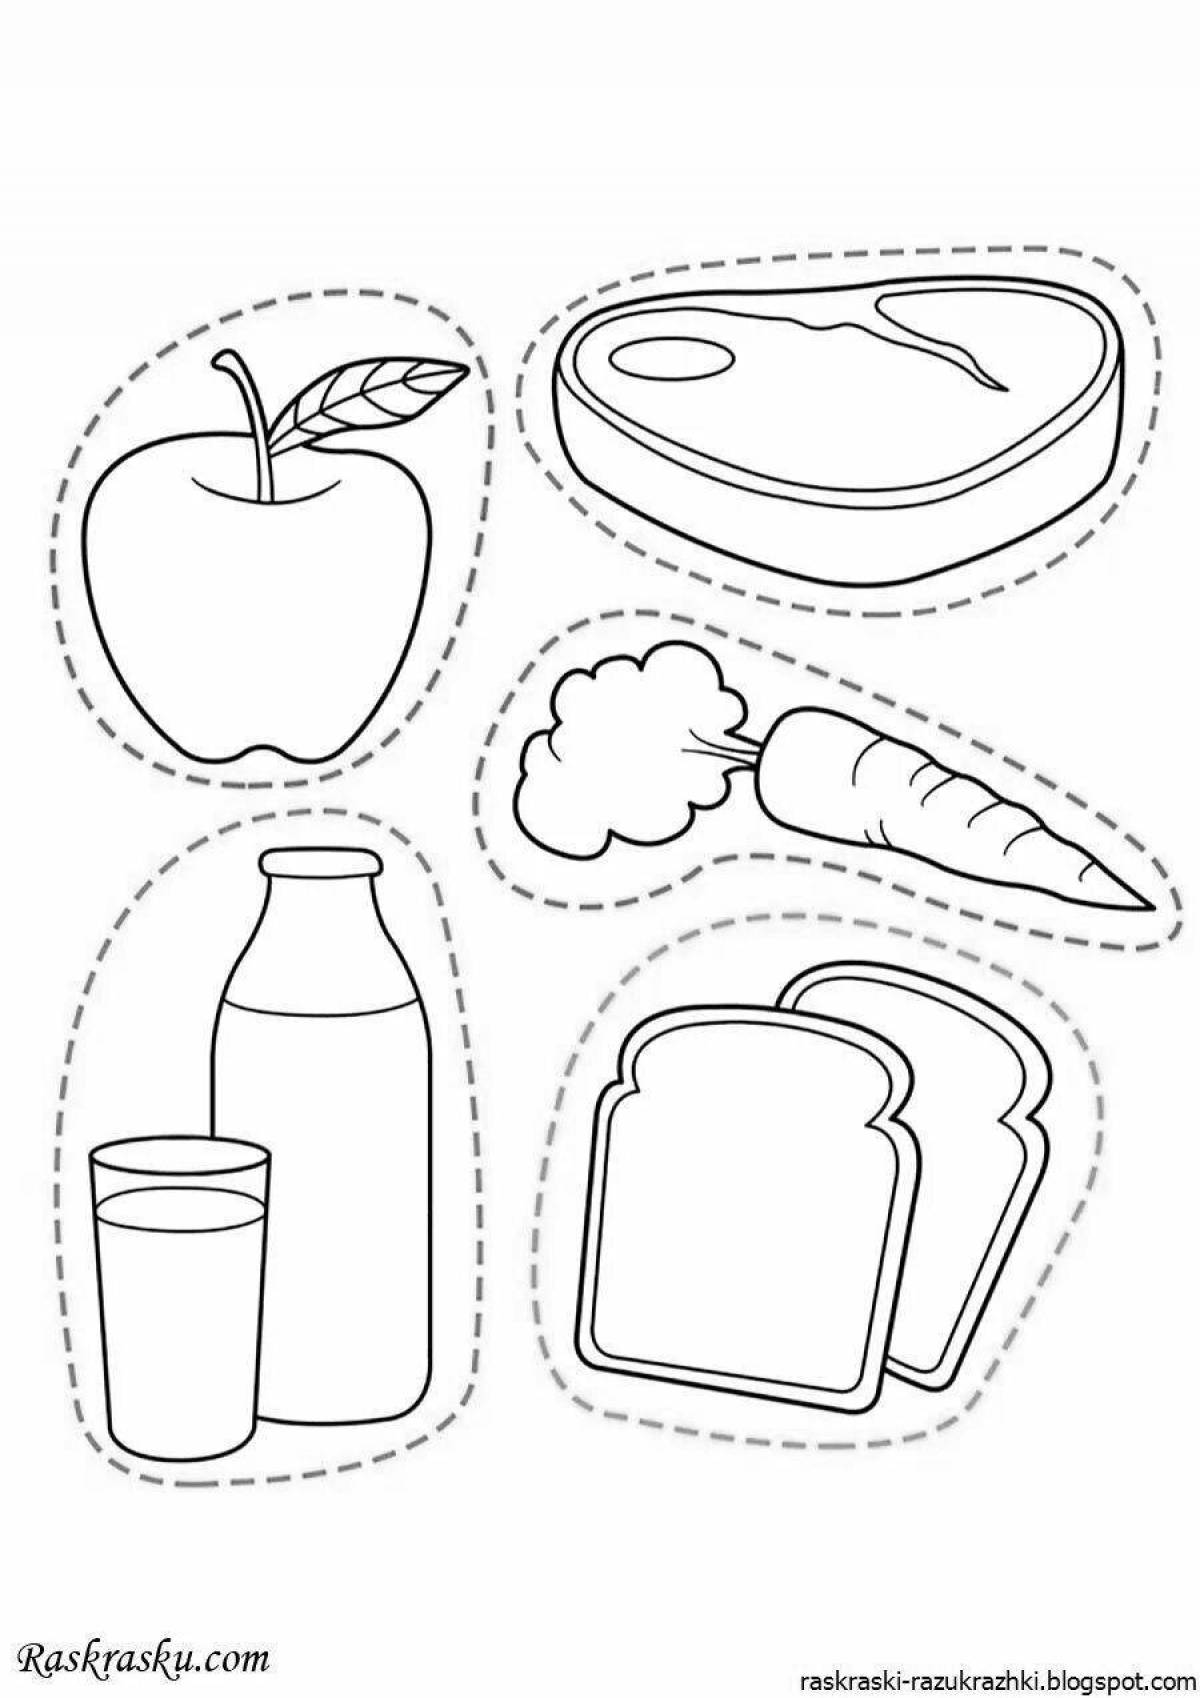 Аппетитная раскраска здоровой пищи для детей в детском саду